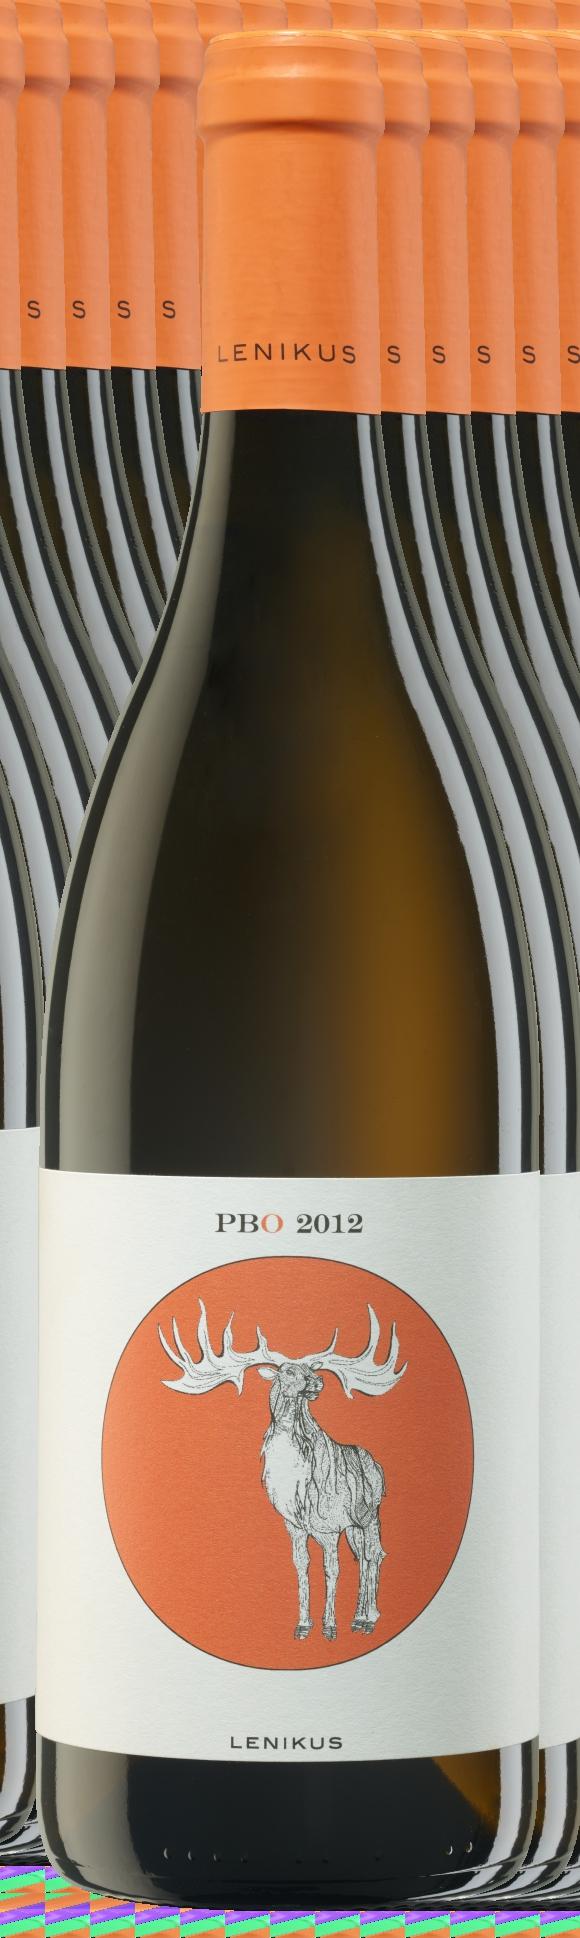 WIENER PINOT BLANC ORANGE 2012 WEISSBURGUNDER Bisamberg Löss, SANDSTEIN HIRSCH im gebrauchten Barrique 12,5 % 5,1 g/l 1,0 g/l DER Wein, um die neue Weingattung Orange Weine so kennen zu lernen, dass